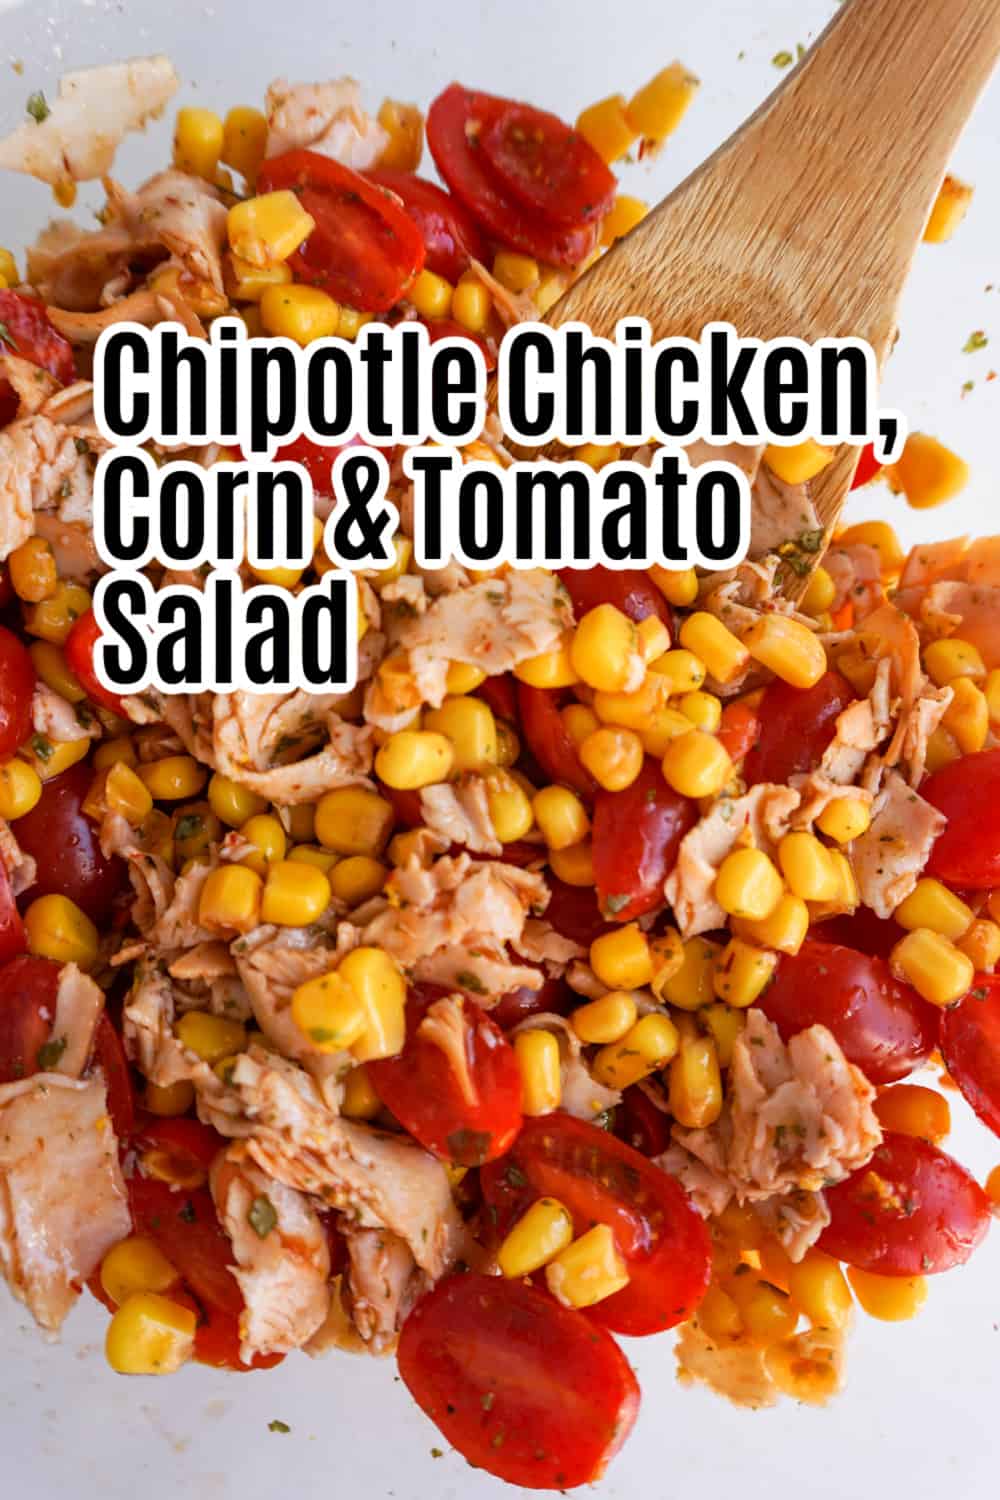 Chipotle Chicken, Corn, and Tomato Salad Recipe